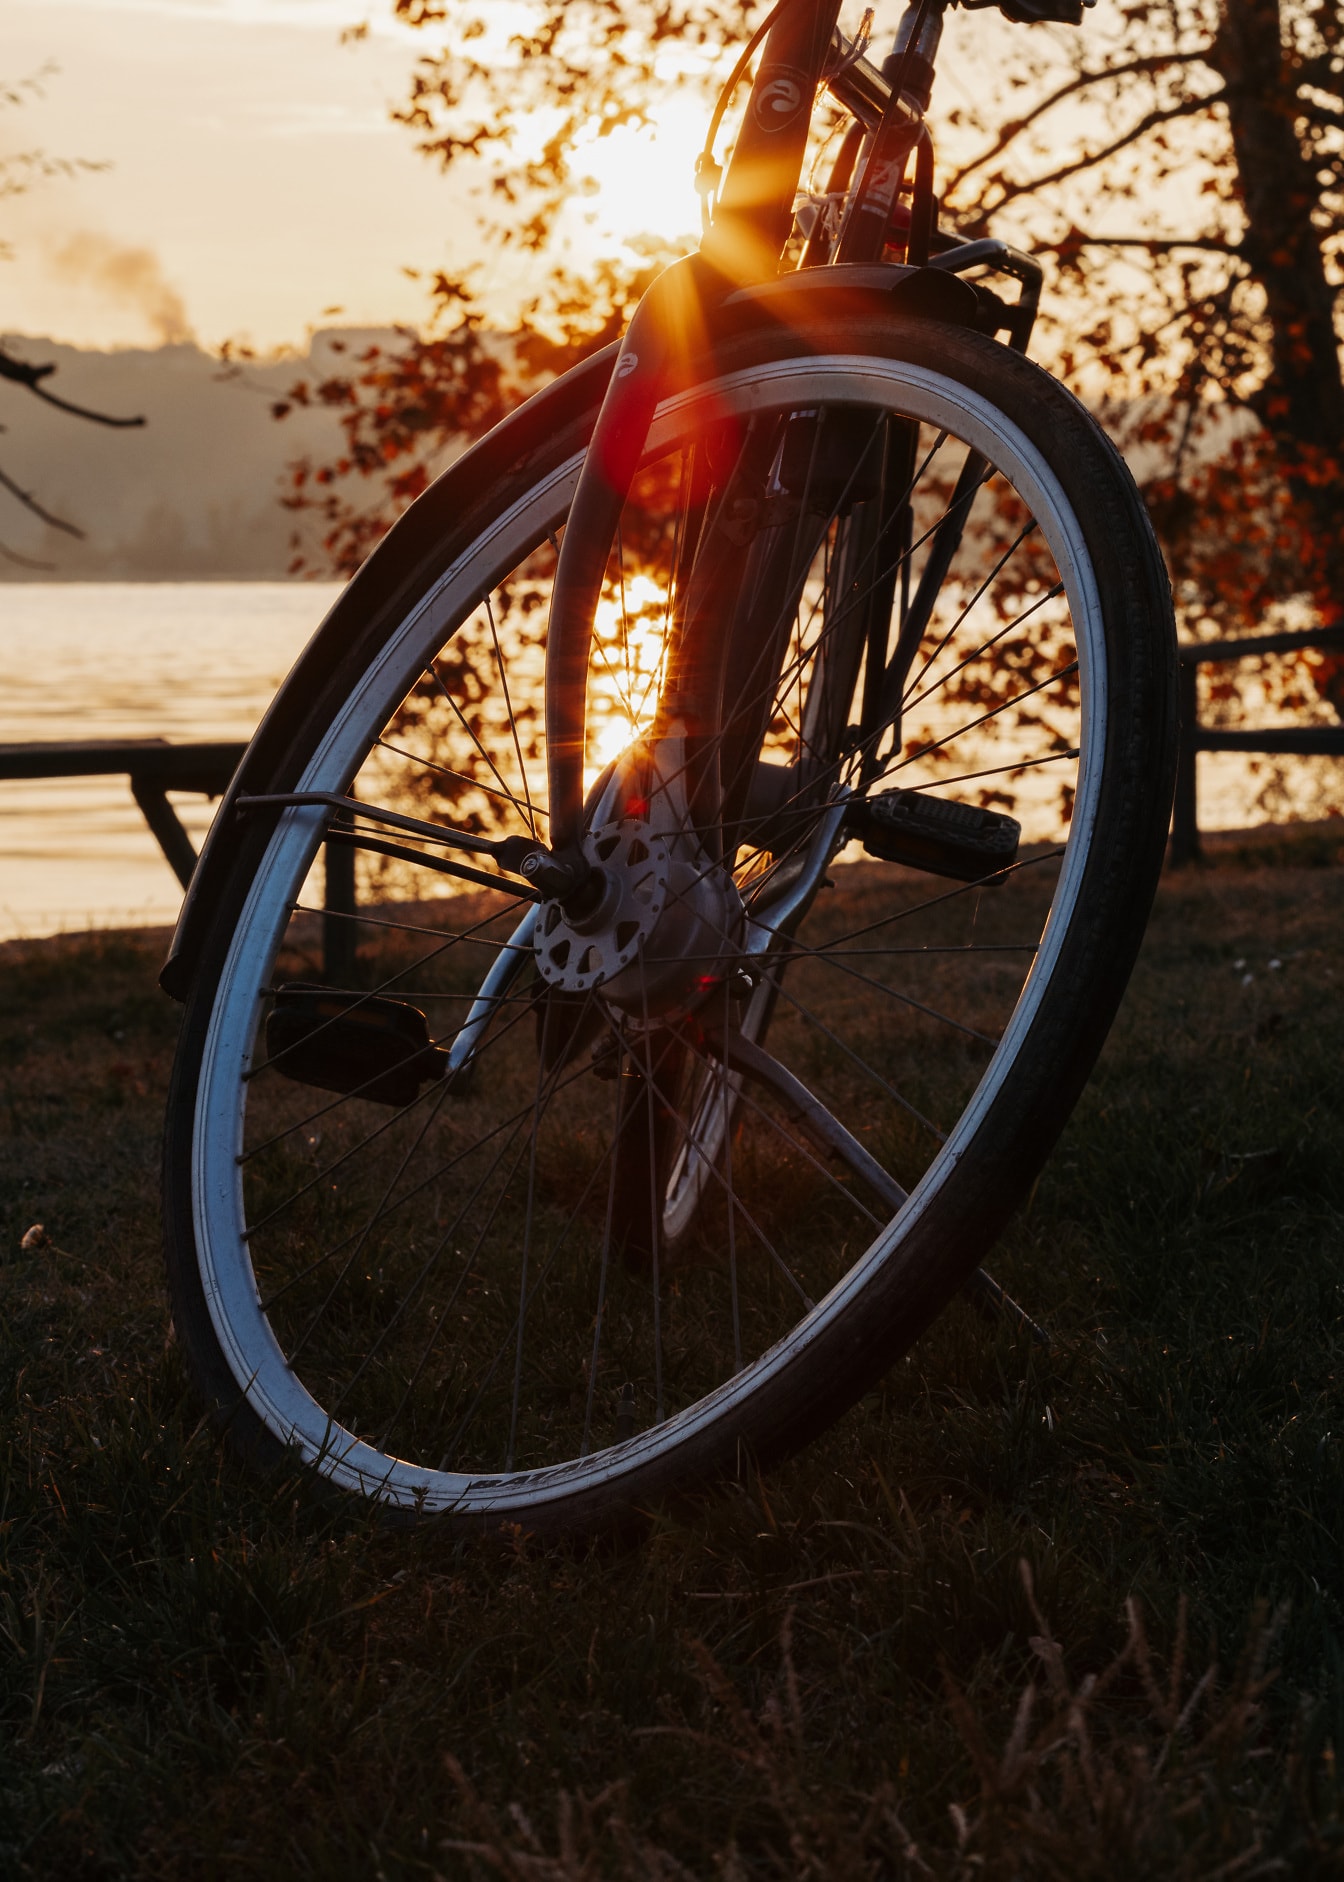 ภาพระยะใกล้ของยางจักรยานที่มีแสงแดดส่องถึงเป็นฉากหลัง